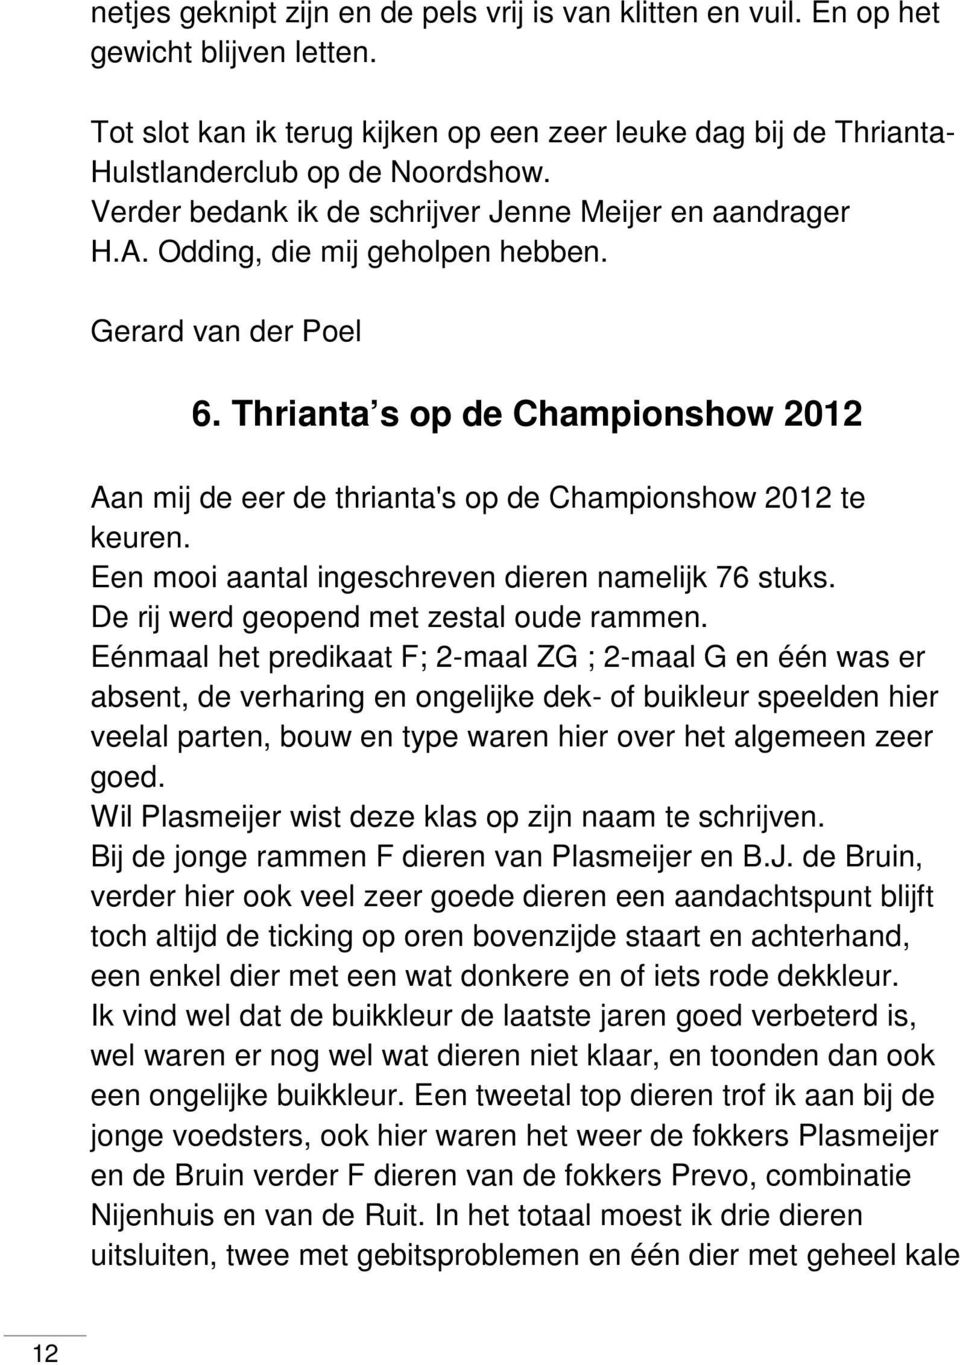 Thrianta s op de Championshow 2012 Aan mij de eer de thrianta's op de Championshow 2012 te keuren. Een mooi aantal ingeschreven dieren namelijk 76 stuks. De rij werd geopend met zestal oude rammen.